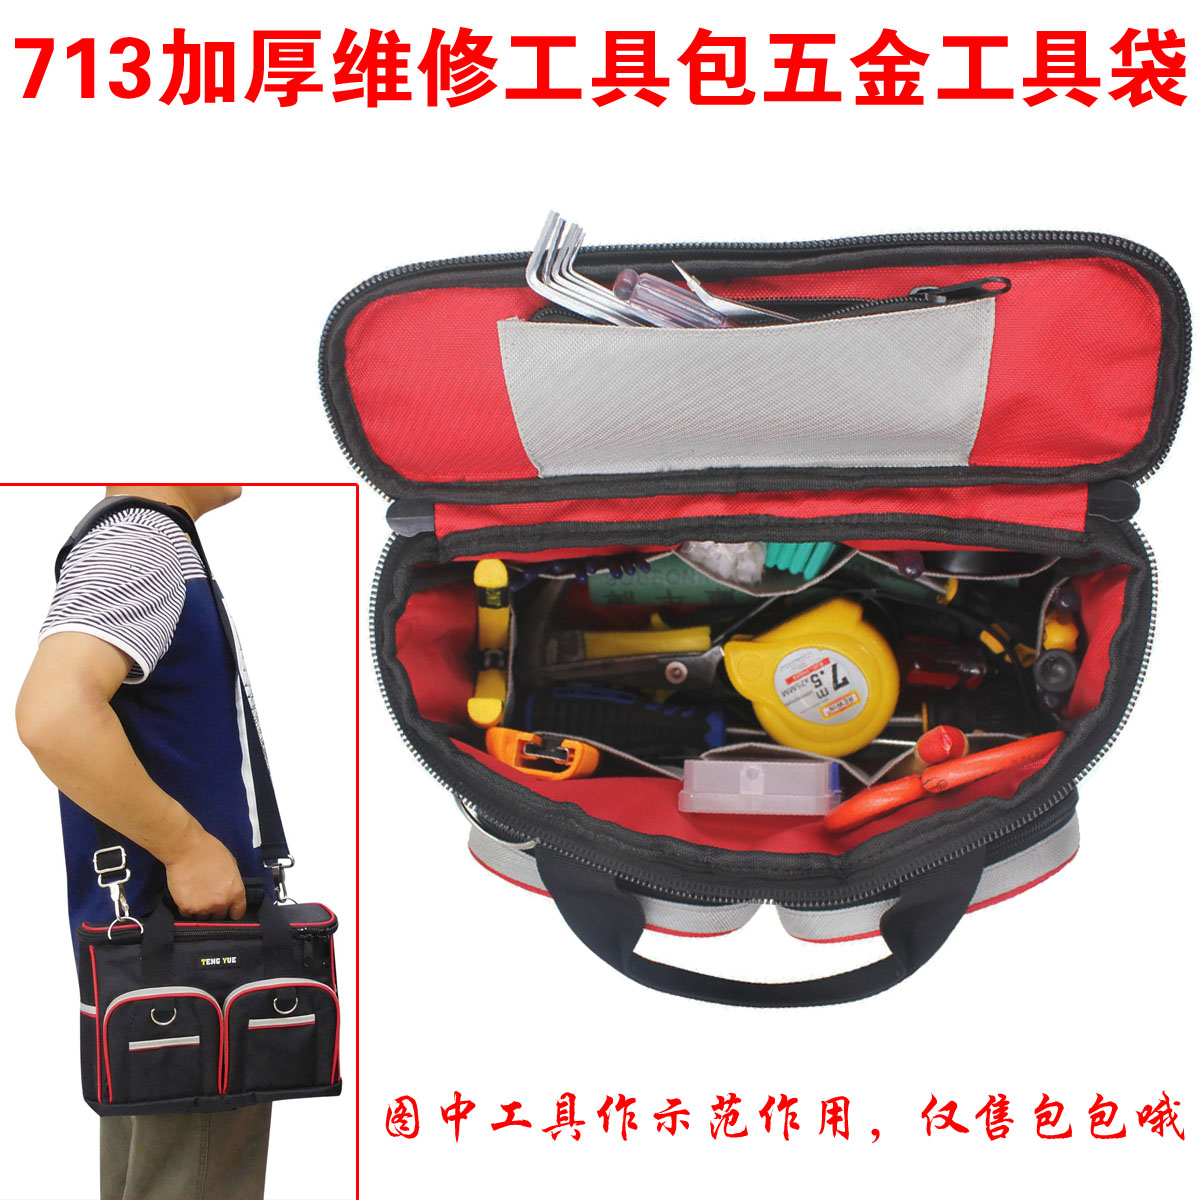 713加厚维修工具包五金工具袋防水单肩手提工作包收纳包订做定制